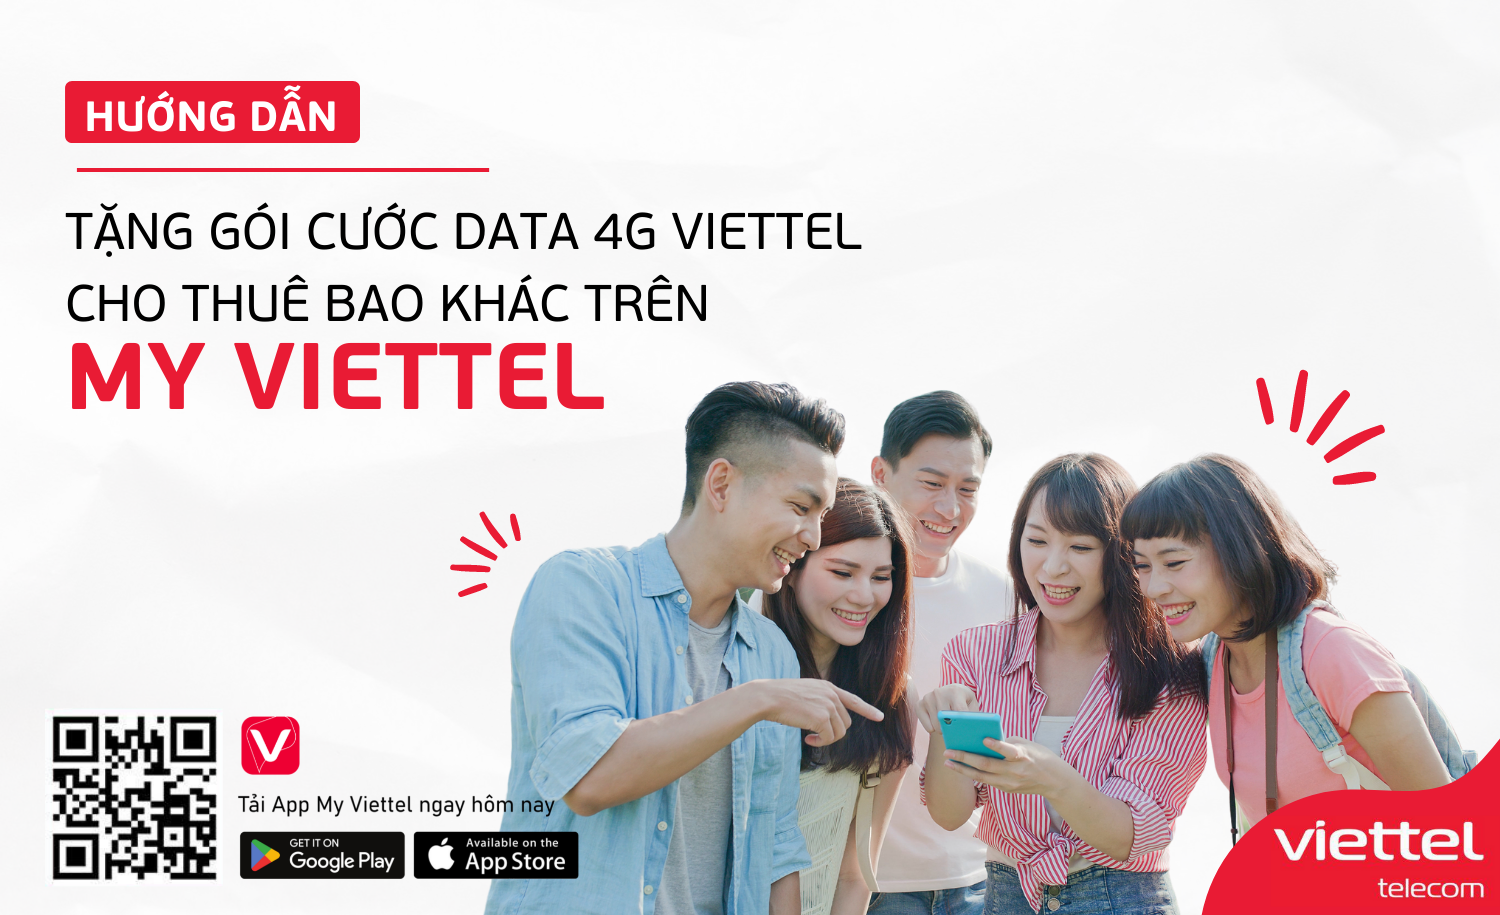 Hướng dẫn khách hàng tặng gói cước data 4G Viettel cho thuê bao